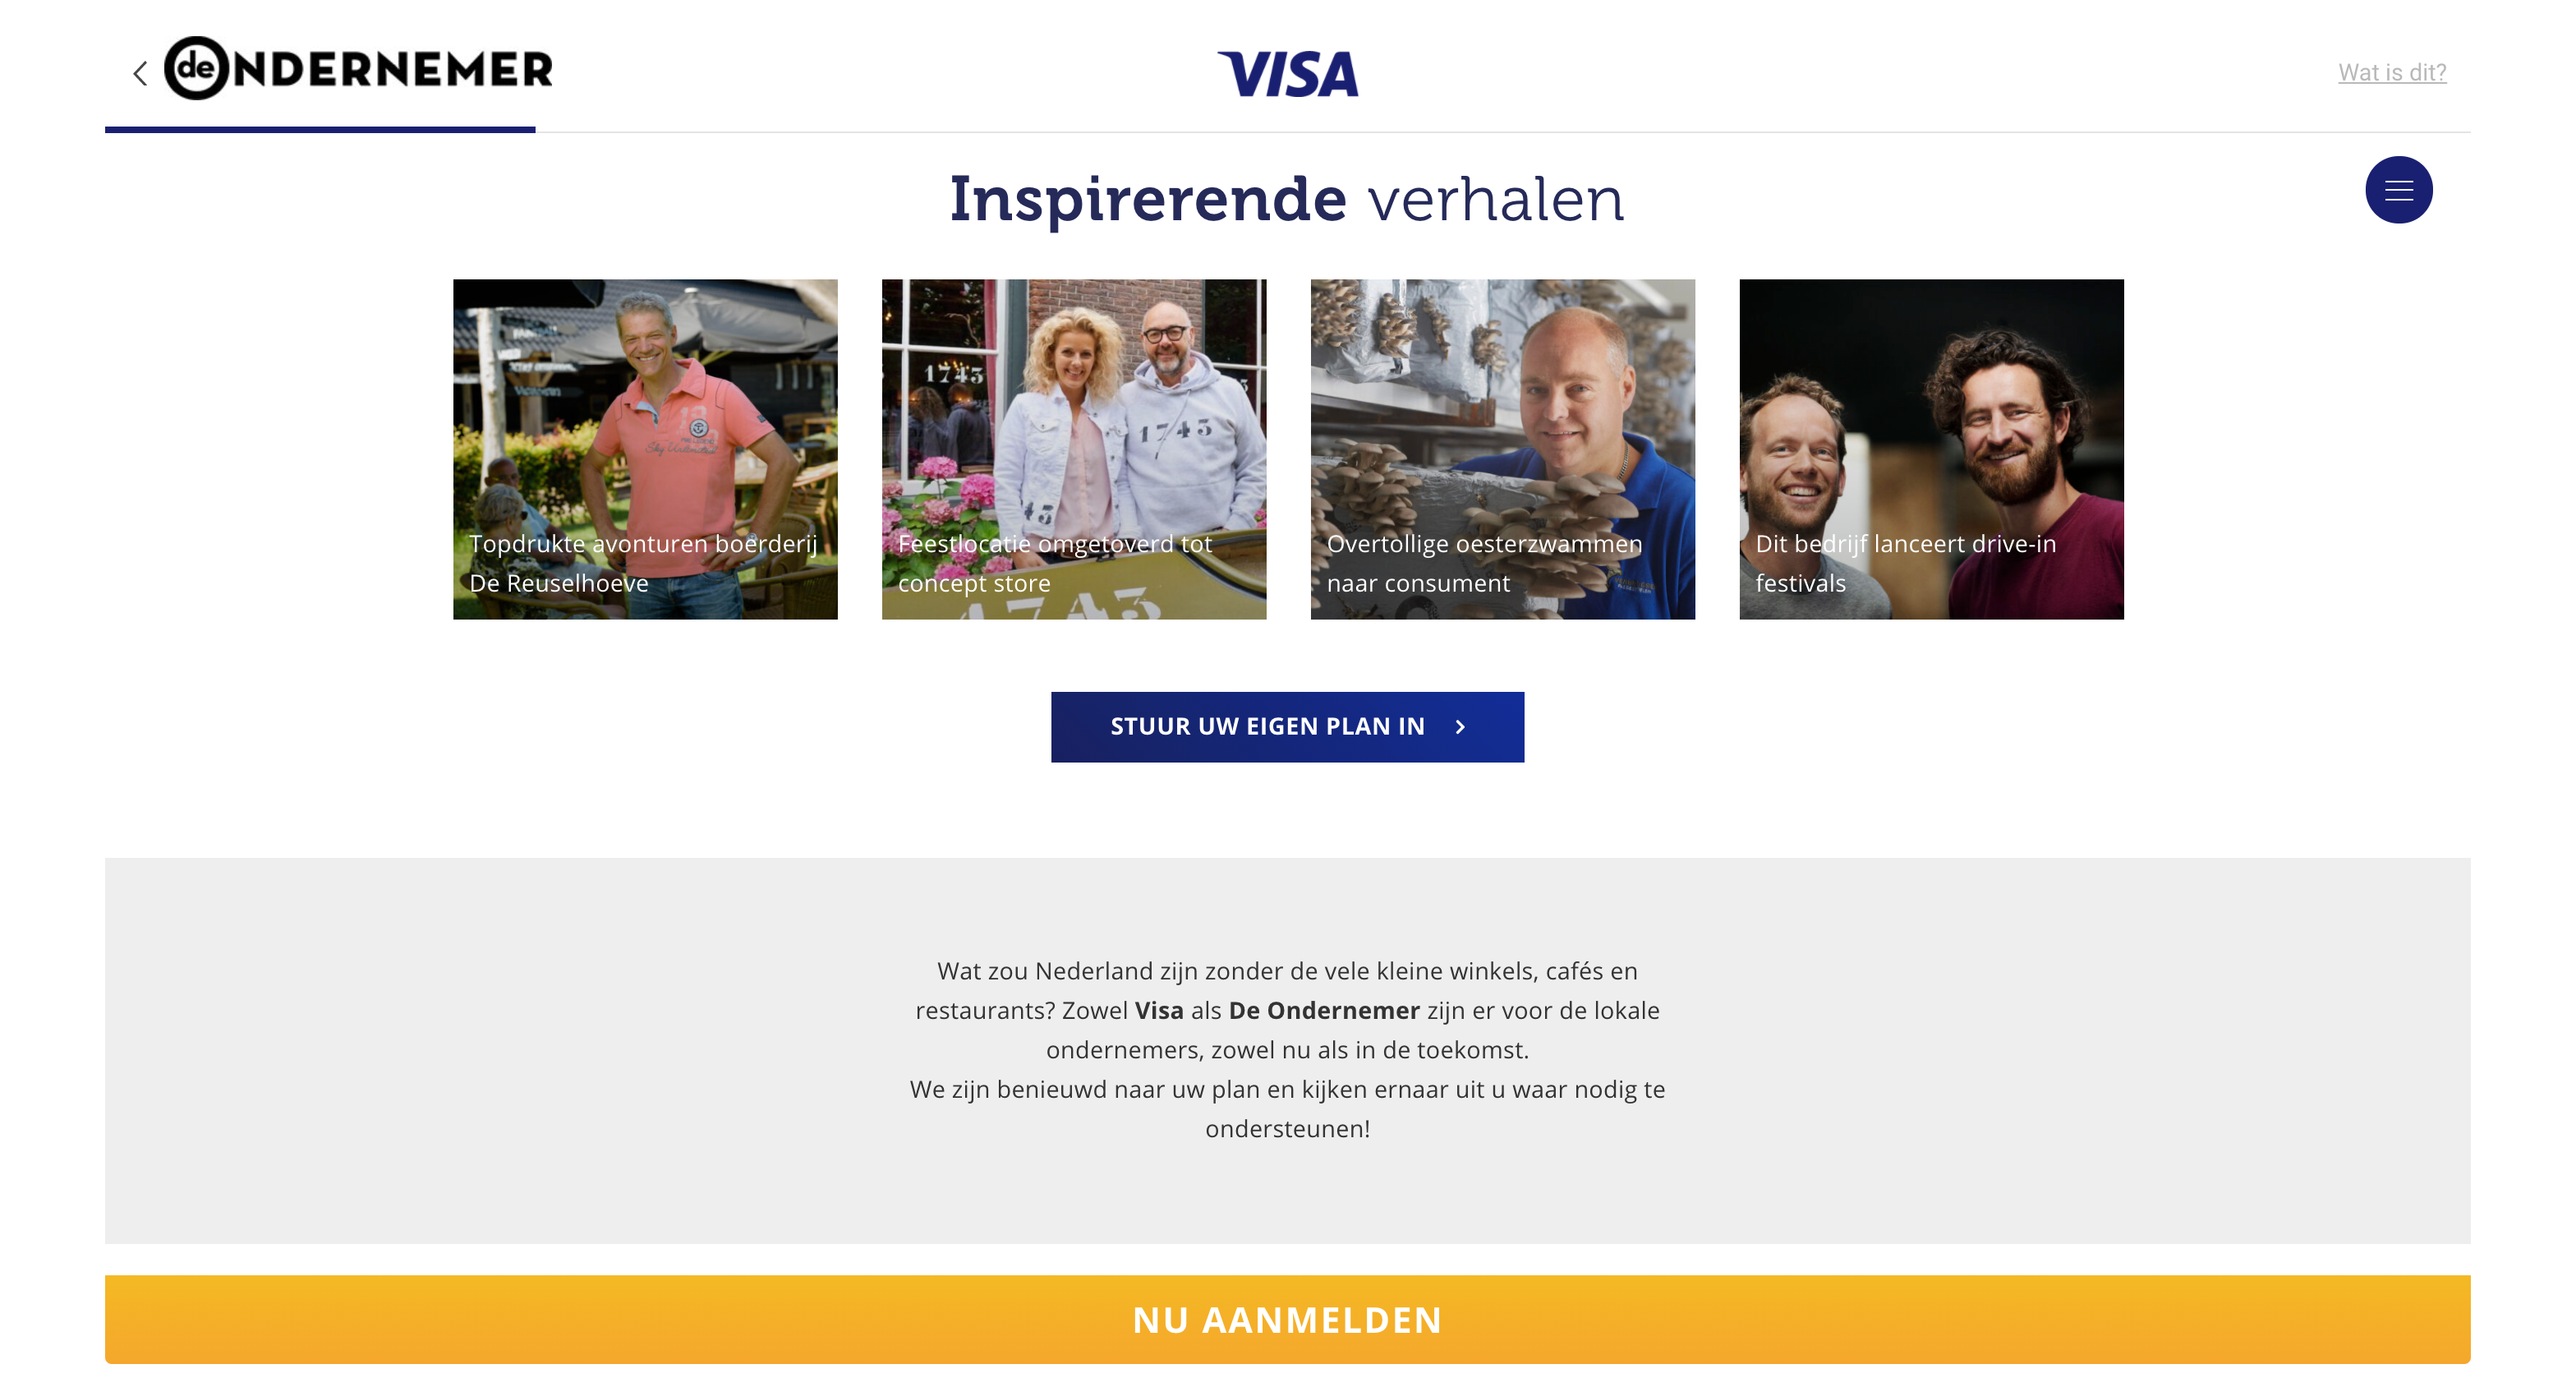 visa-deondernmener-campaign-2